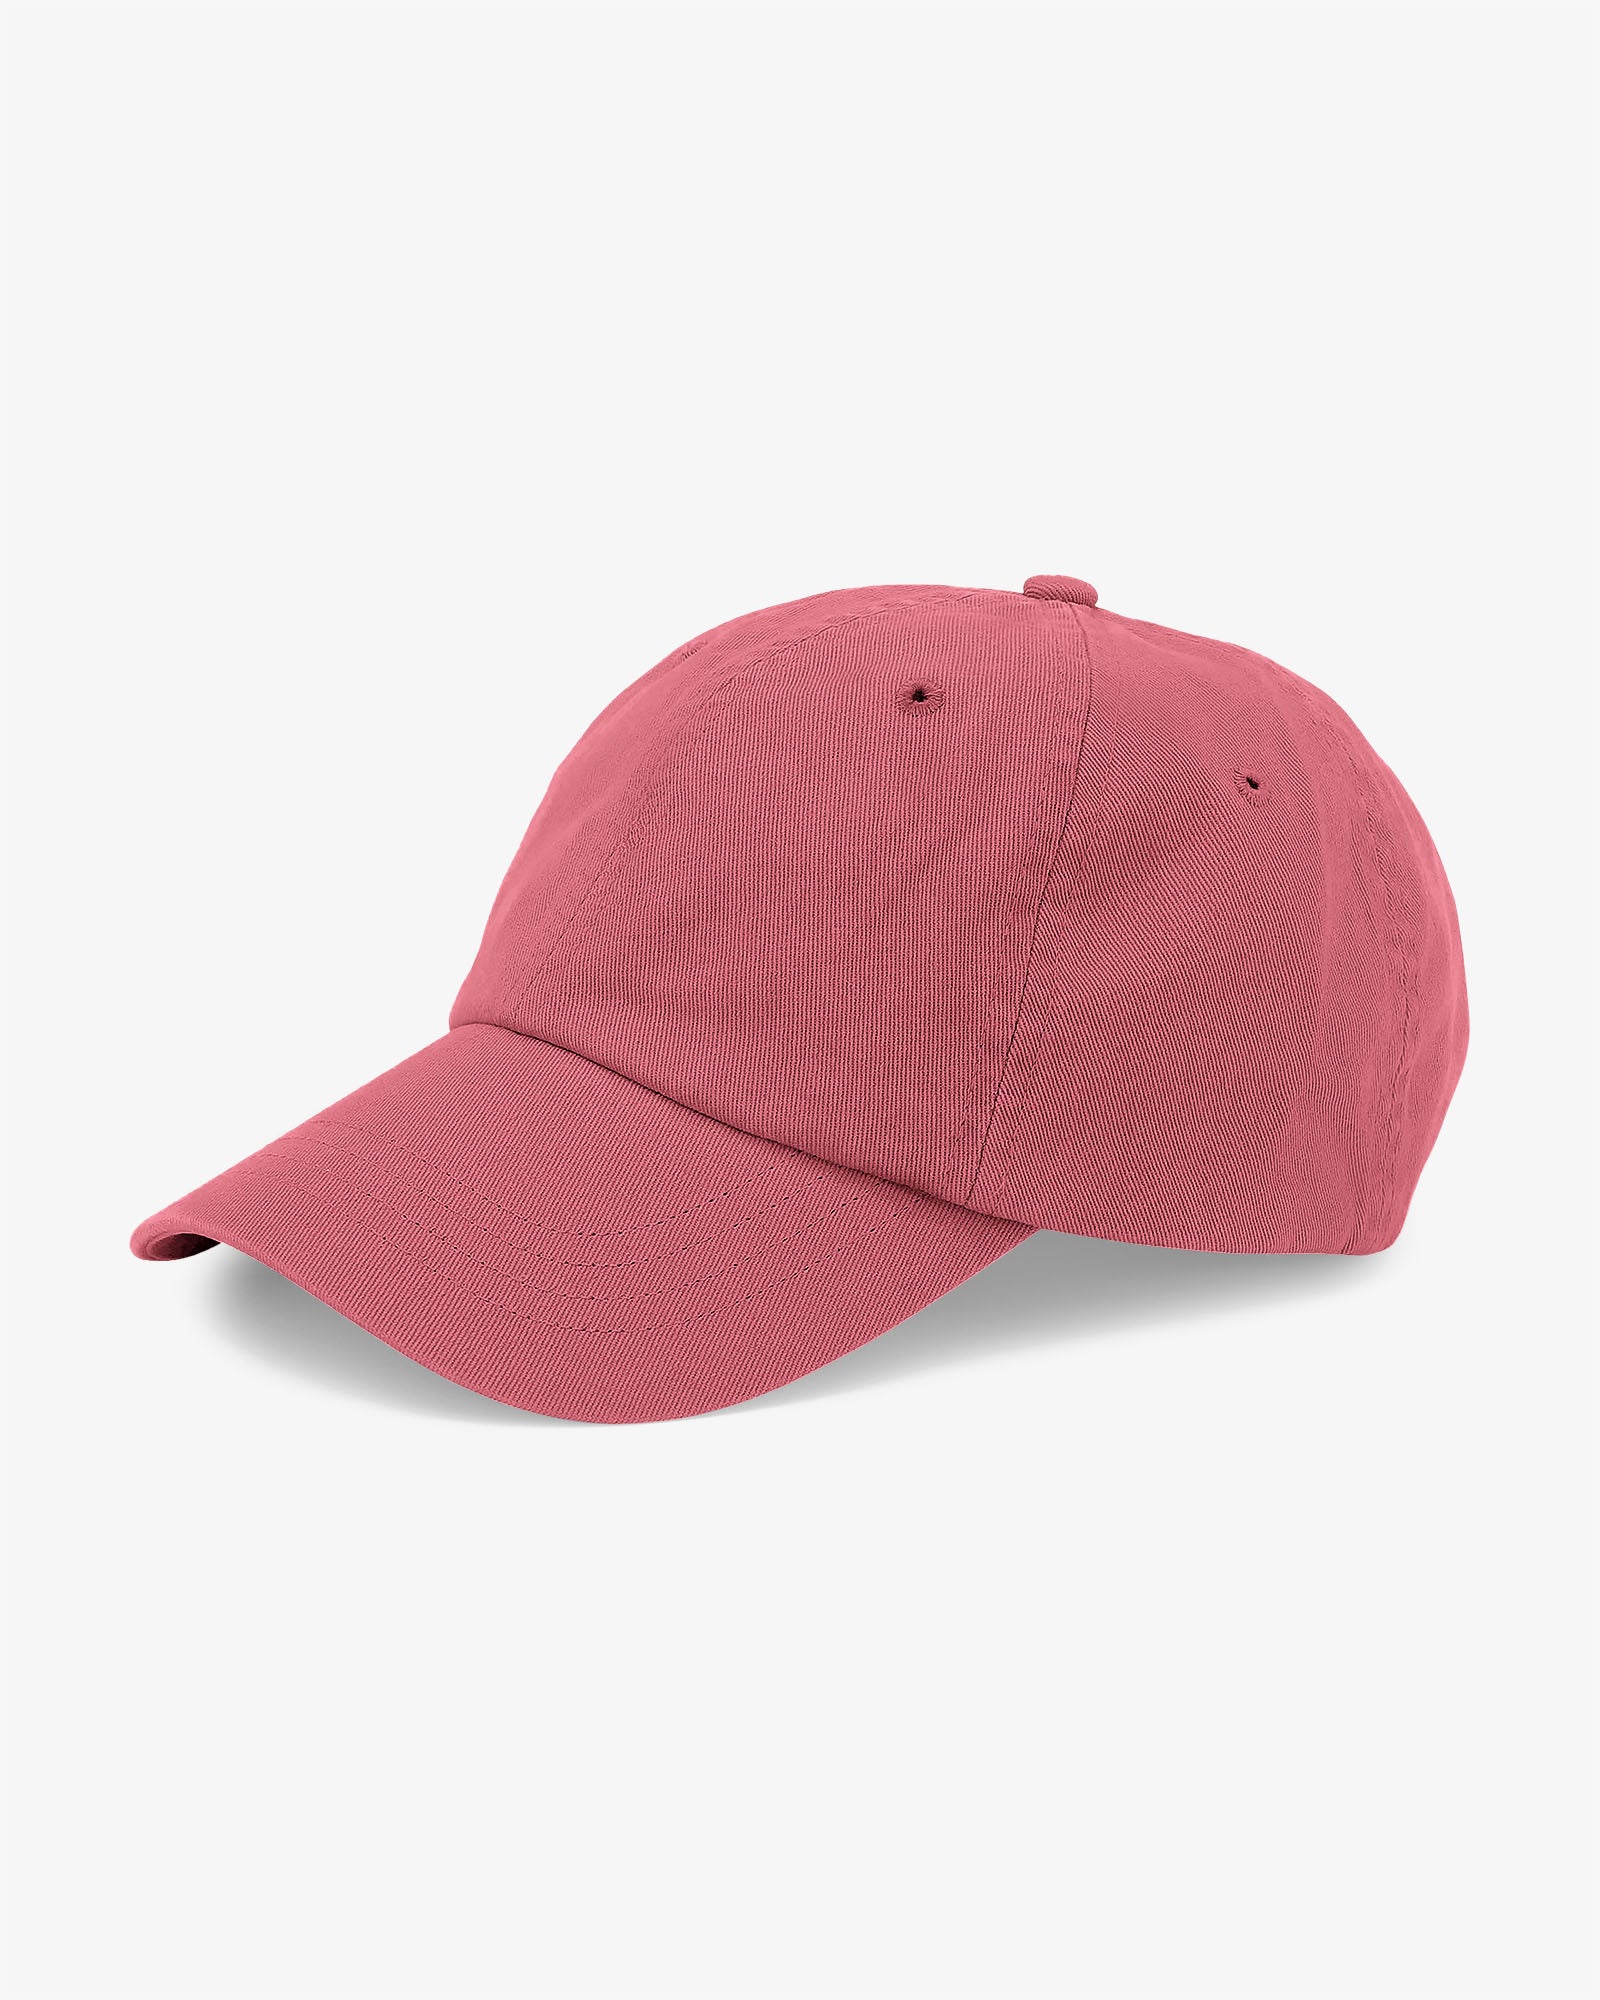 Organic Cotton Cap - Raspberry Pink